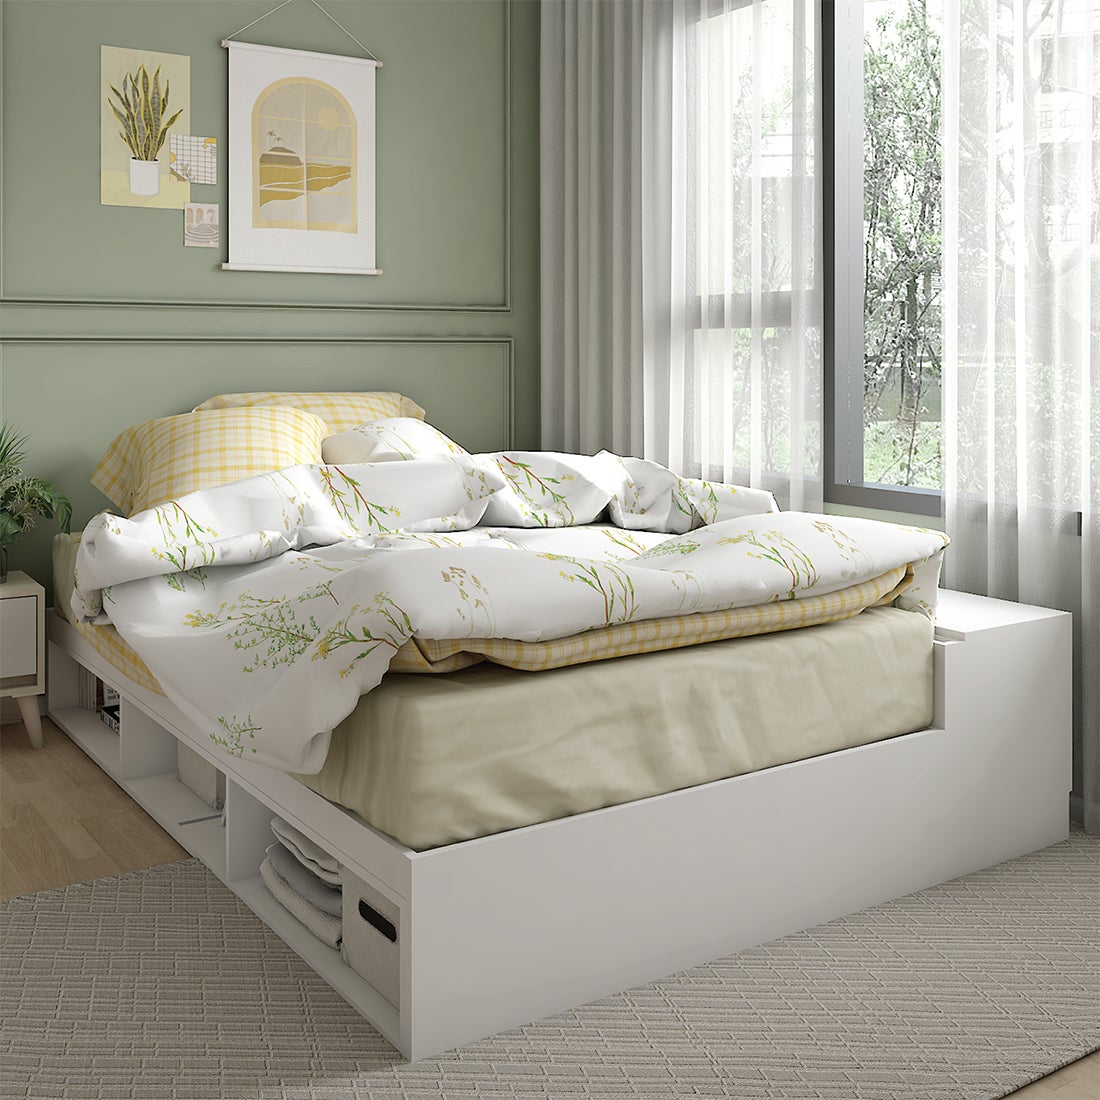 เตียงนอน+กล่องเก็บของด้านข้าง รุ่น KC-PLAY FANTASY ขนาด 3.5 ฟุต สีขาว